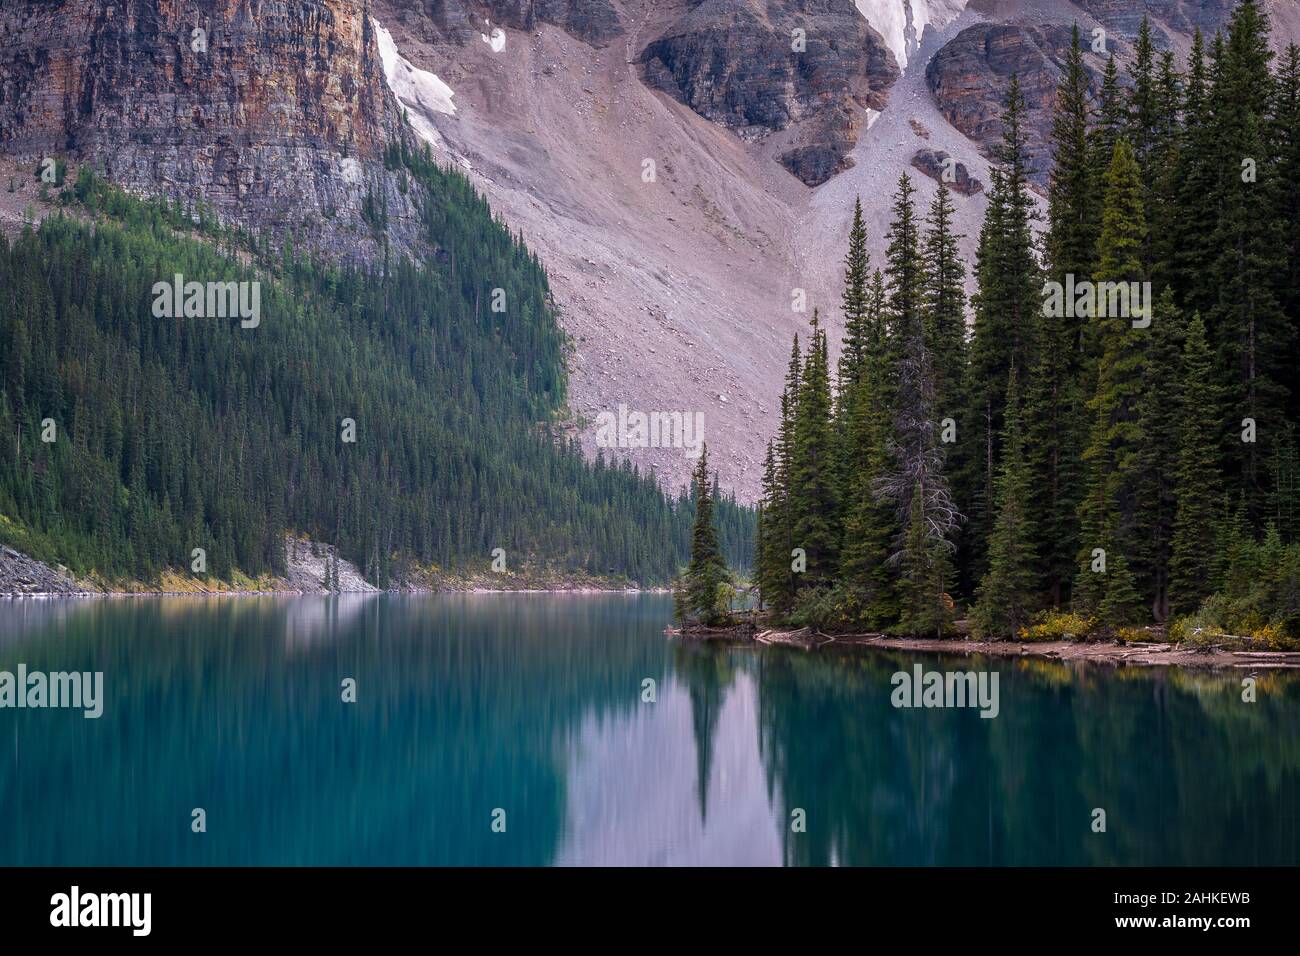 Superbe vue sur de grands arbres et montagne avec reflets dans l'eau bleu turquoise de l'eau du lac Moraine, Banff National Park, Alberta, Canada Banque D'Images